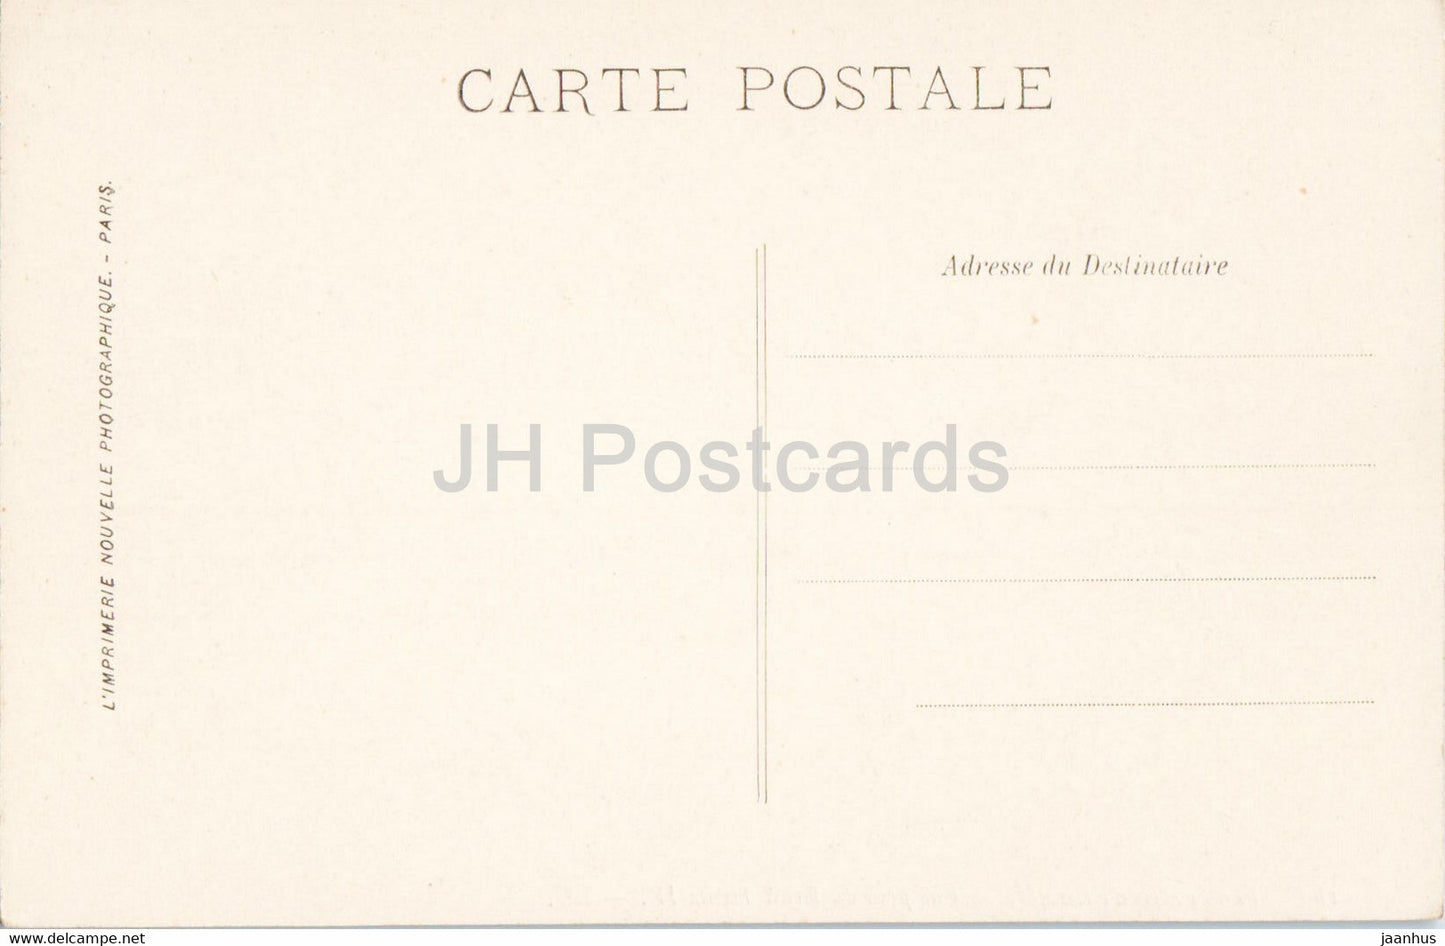 Fontainebleau - Vue prise du Mail Henri IV - 180 - old postcard - France - unused